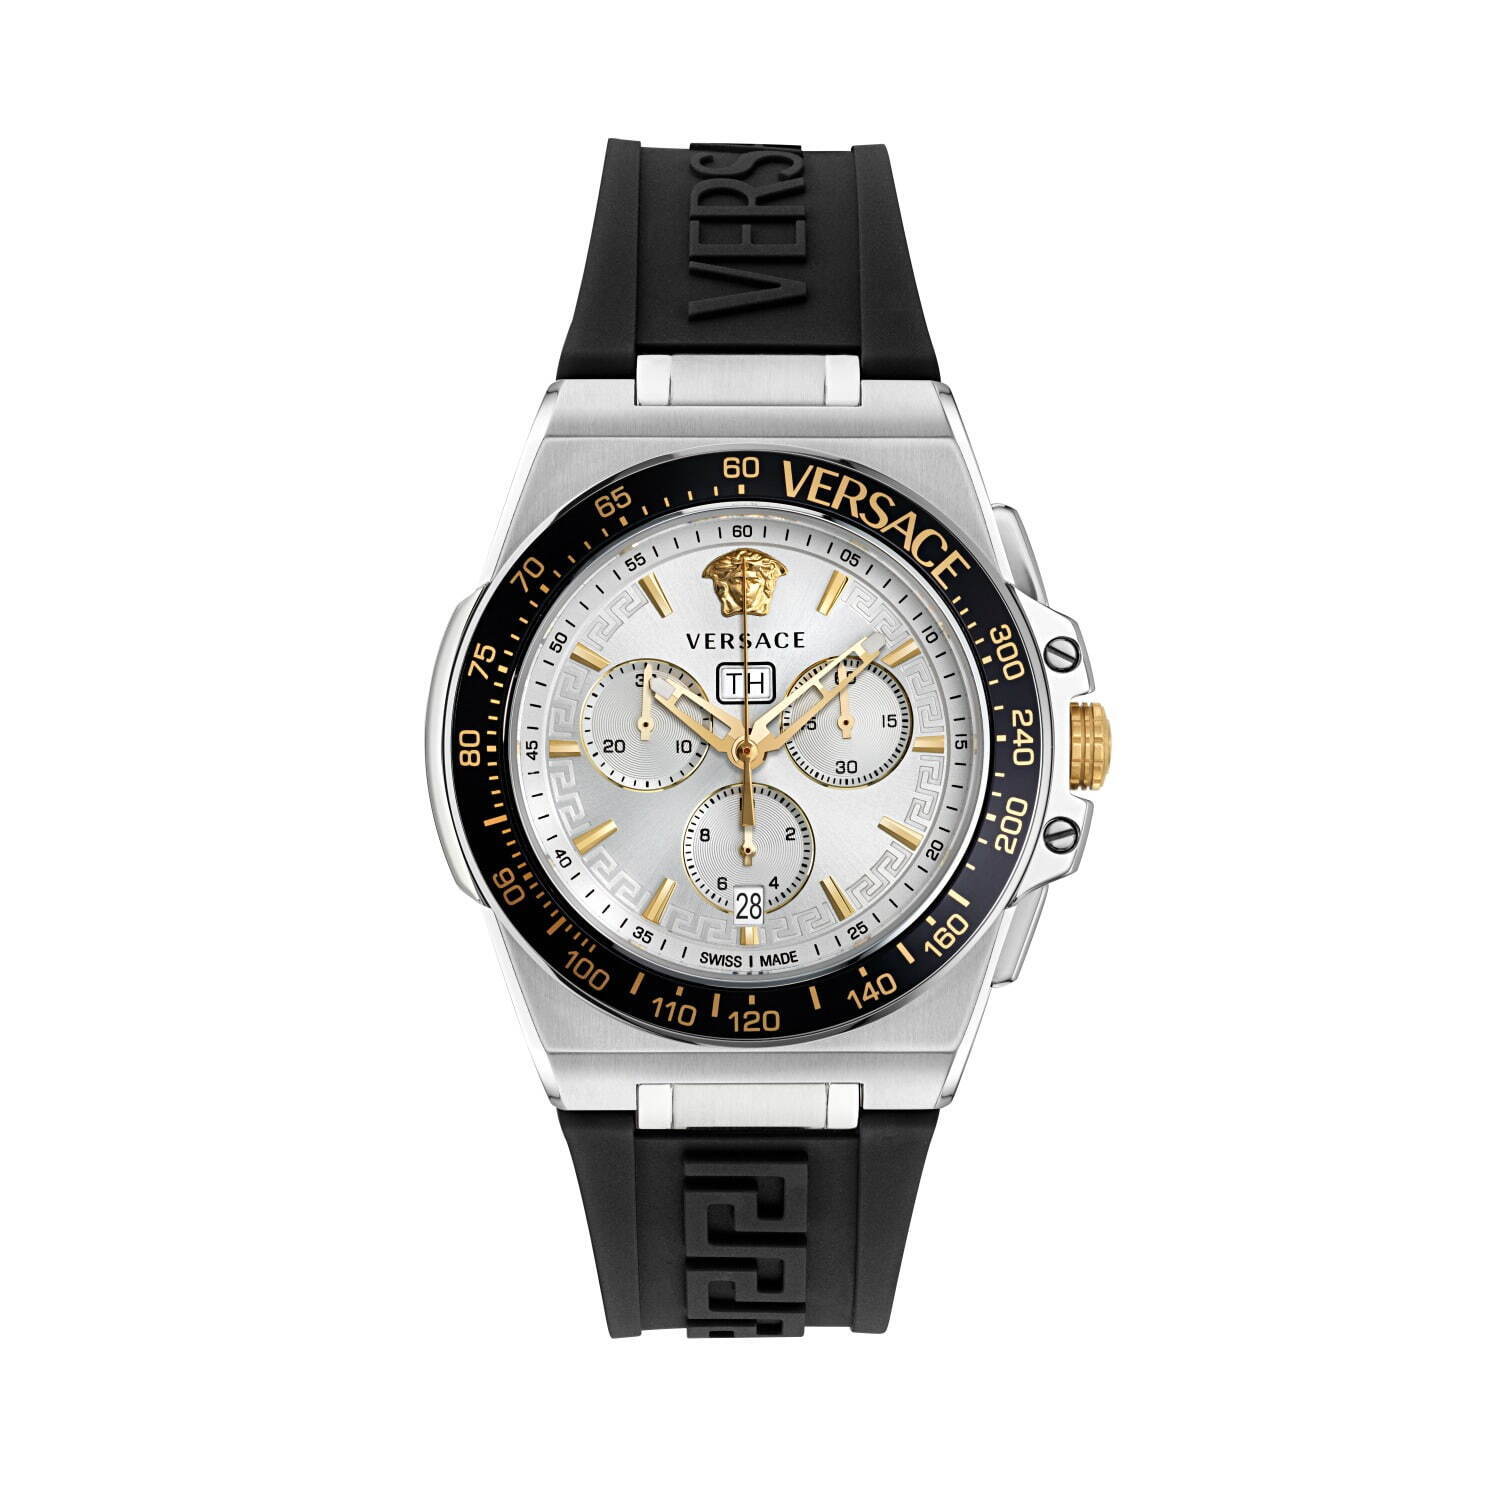 ヴェルサーチェ新作腕時計、“メドゥーサ装飾×グレカ模様”などアイコン